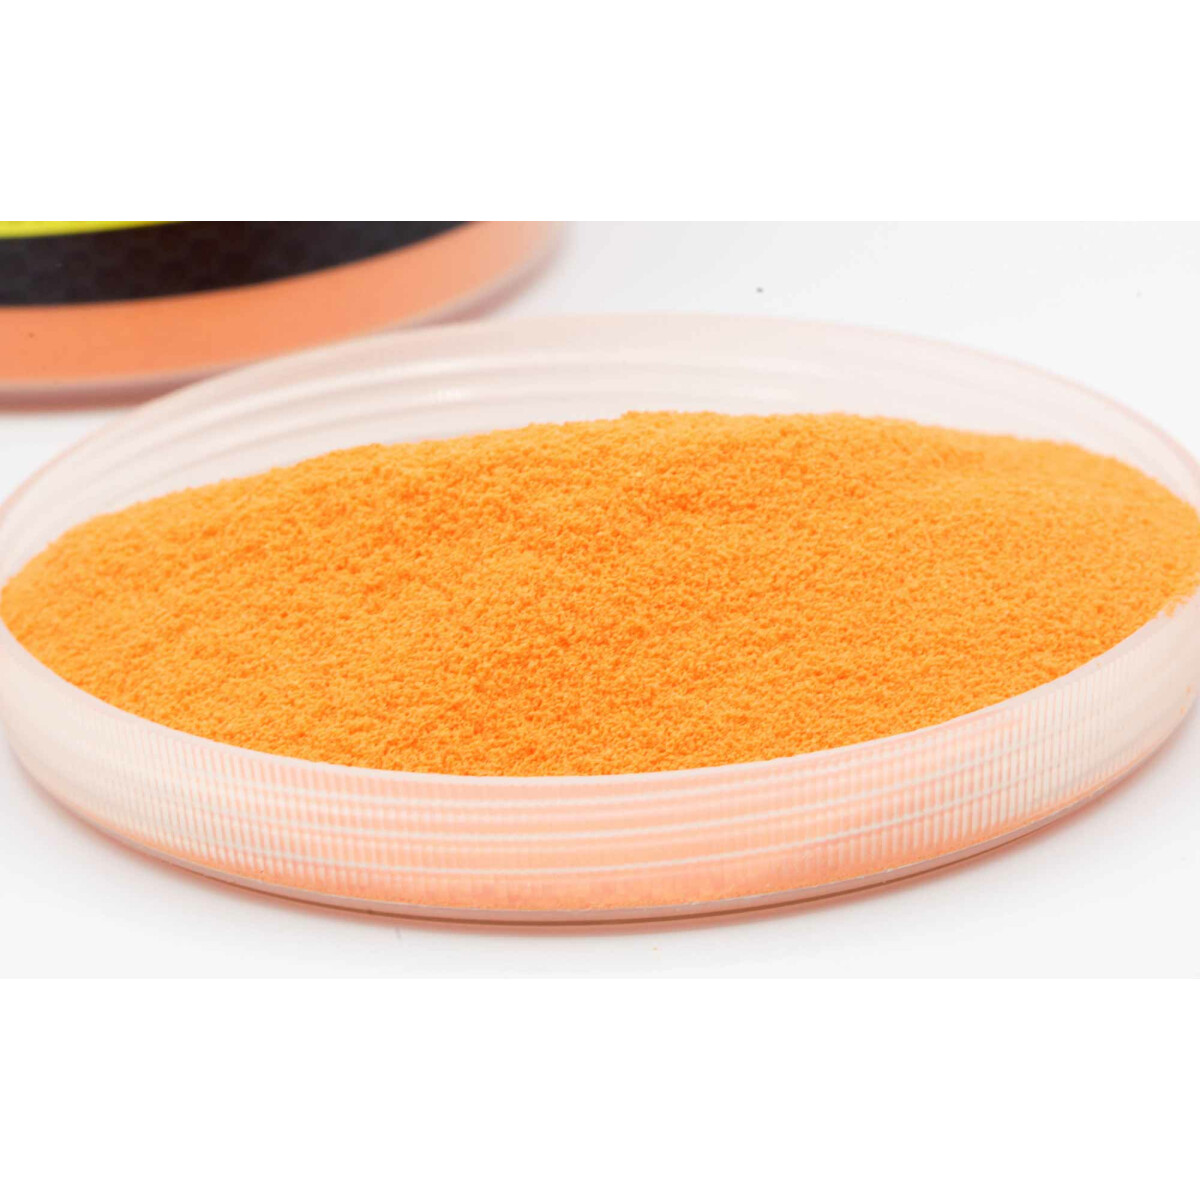 Carpleads Powder Coating - Orange 1000 g